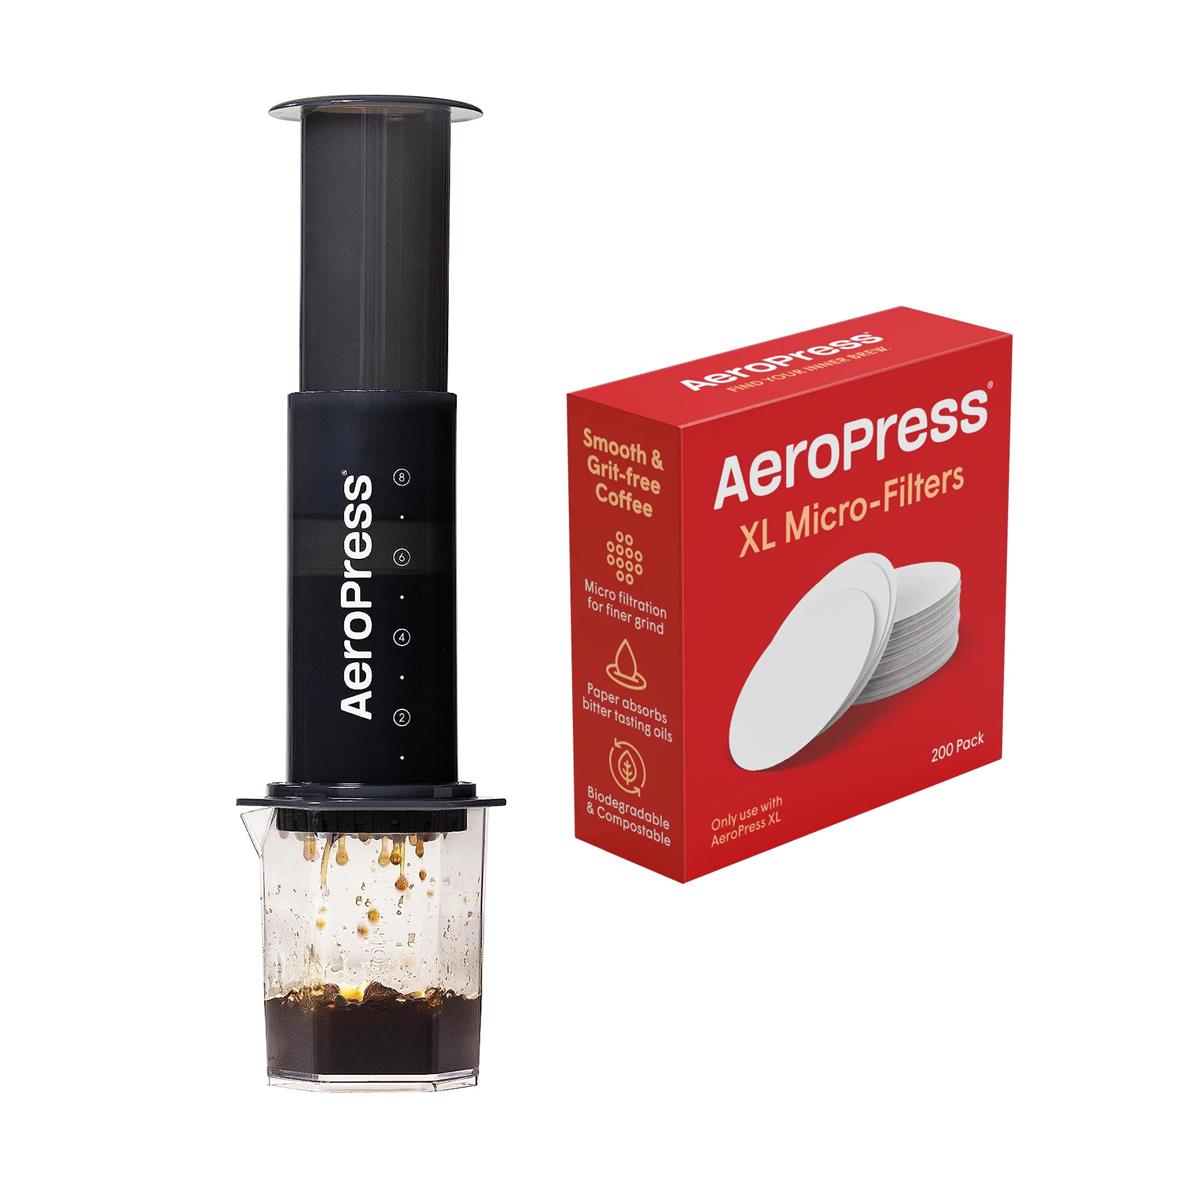 AeroPress - Nouveau pack spécial avec cafetière XL + 200 microfiltres pour cafetière XL